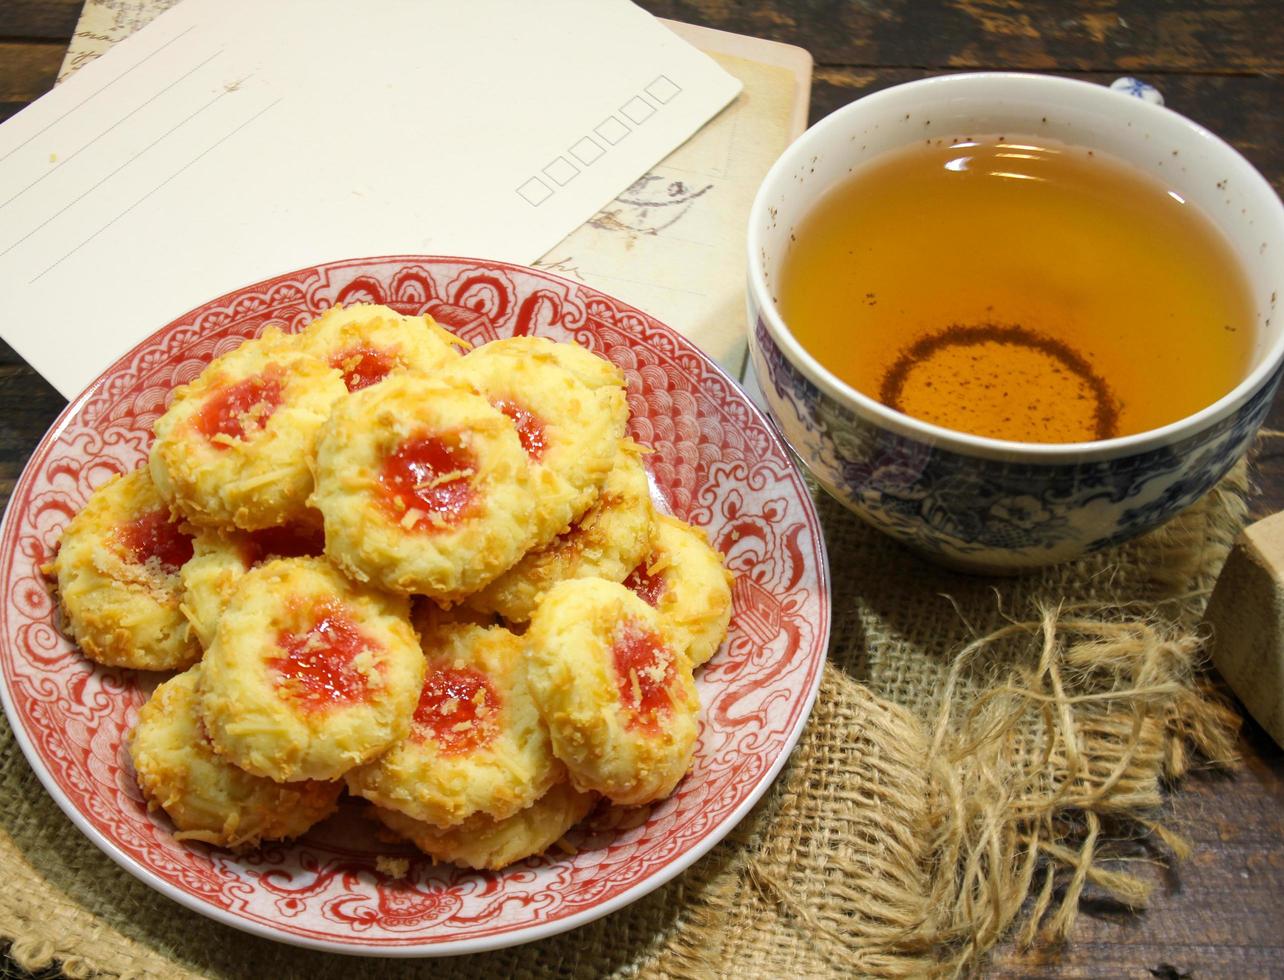 hecho en casa impresión del pulgar fresa mermelada galletas y té foto